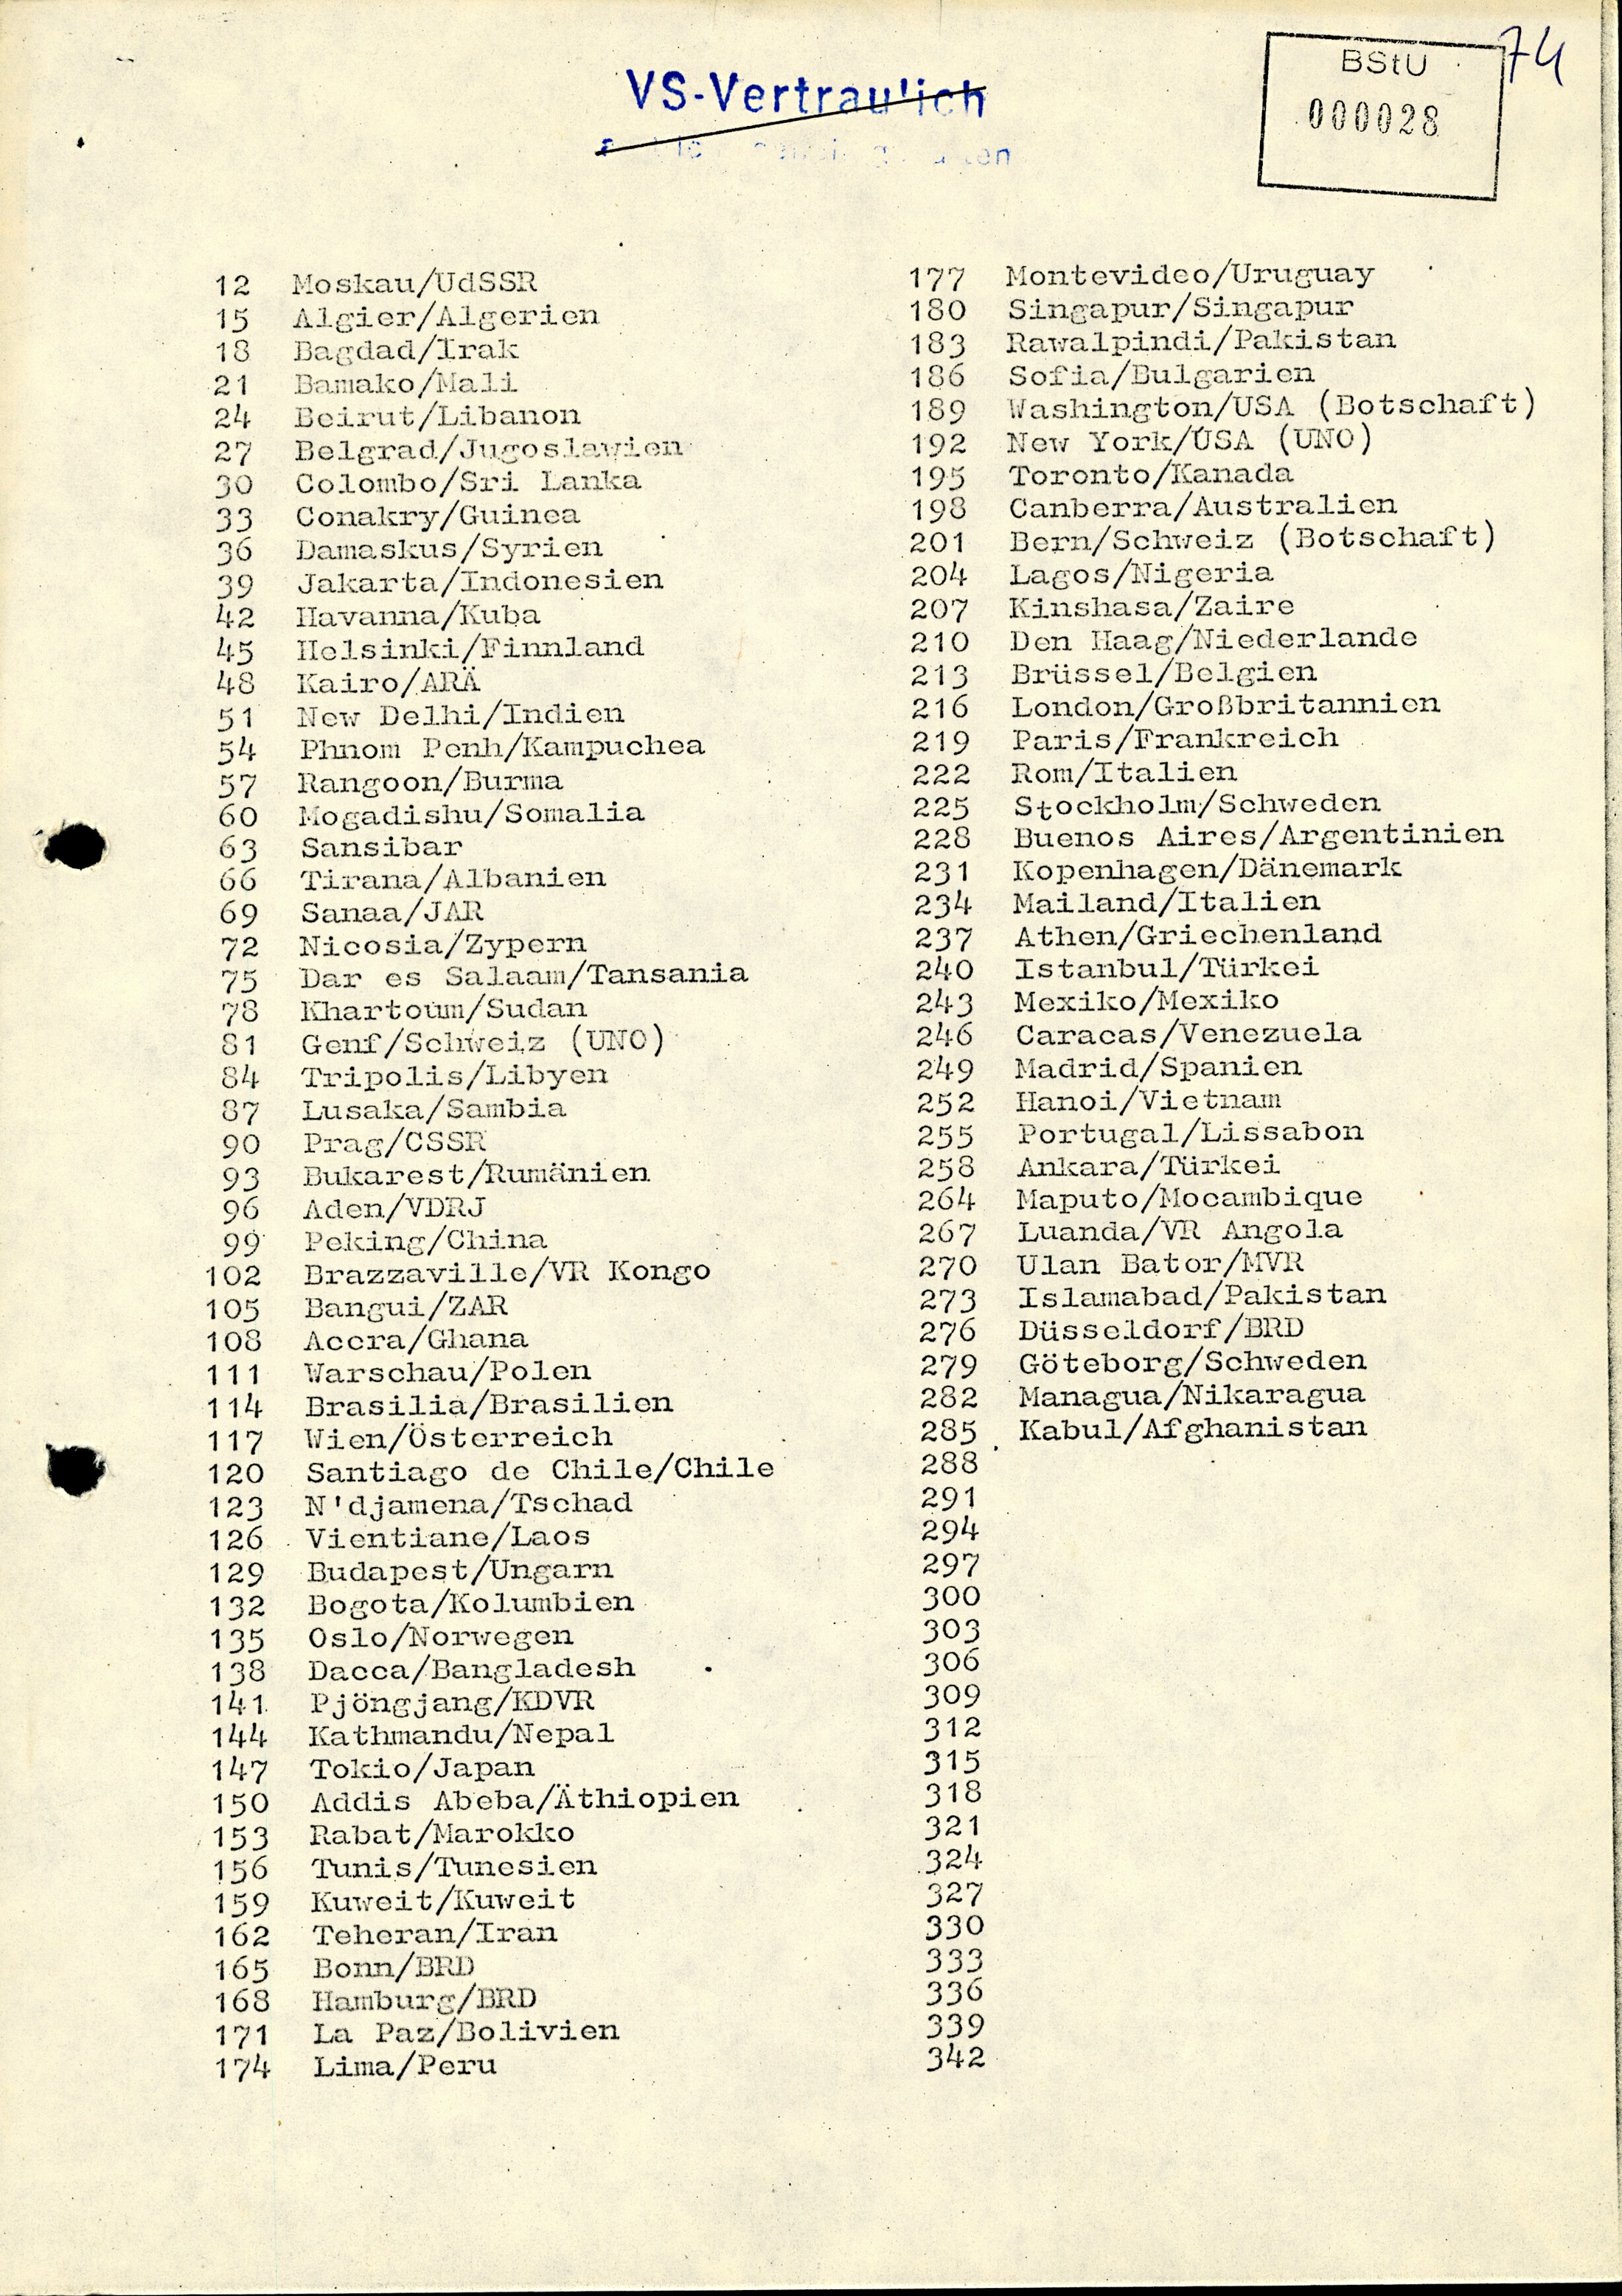 Stasi mitarbeiter liste